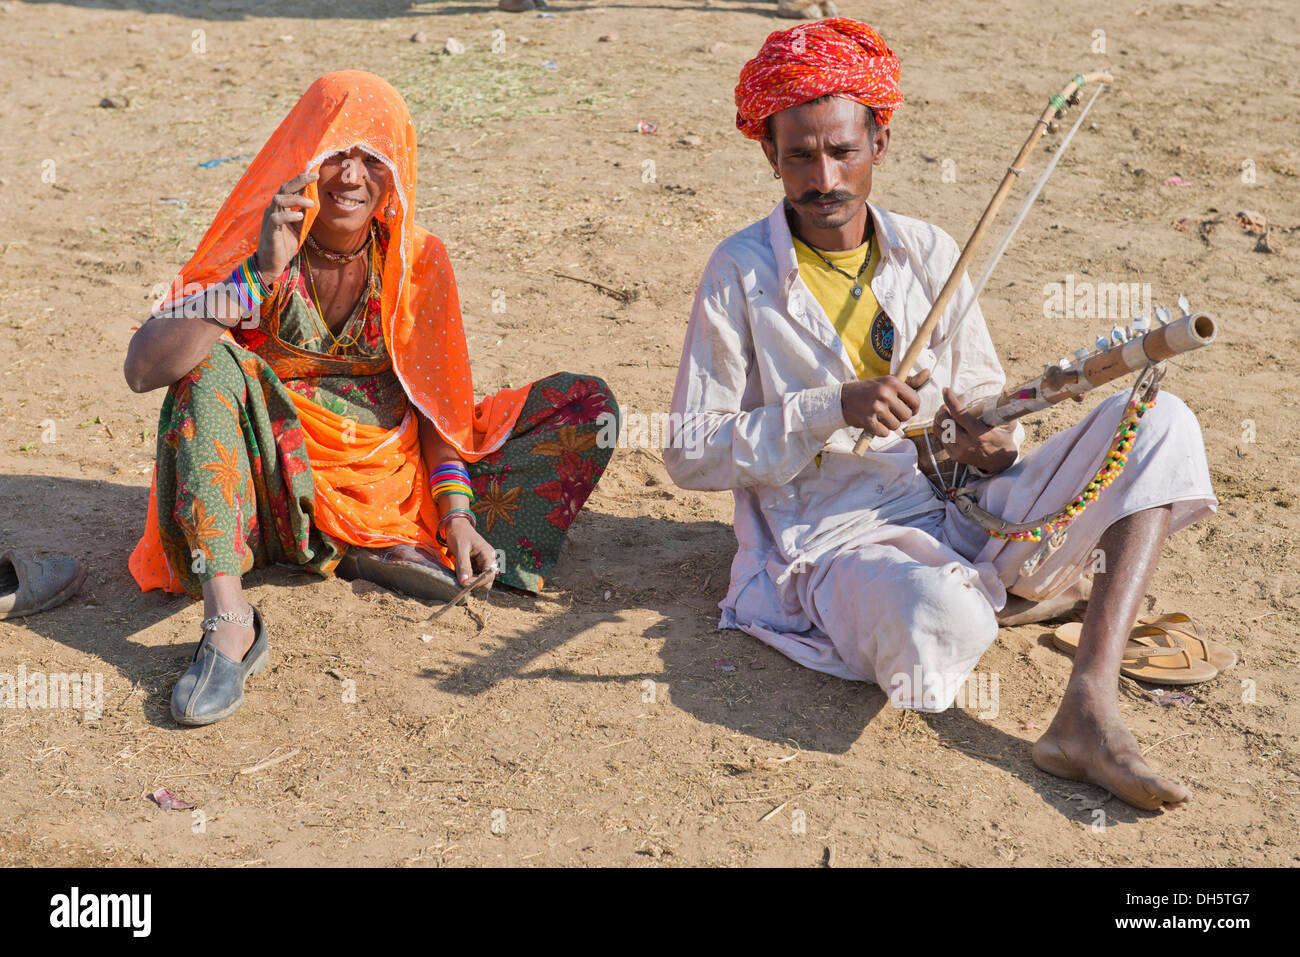 Les hommes indiens avec un turban et porter le vêtement pour hommes traditionnel dhoti, lecture d'un sitar, femme avec un sari coloré assis Banque D'Images